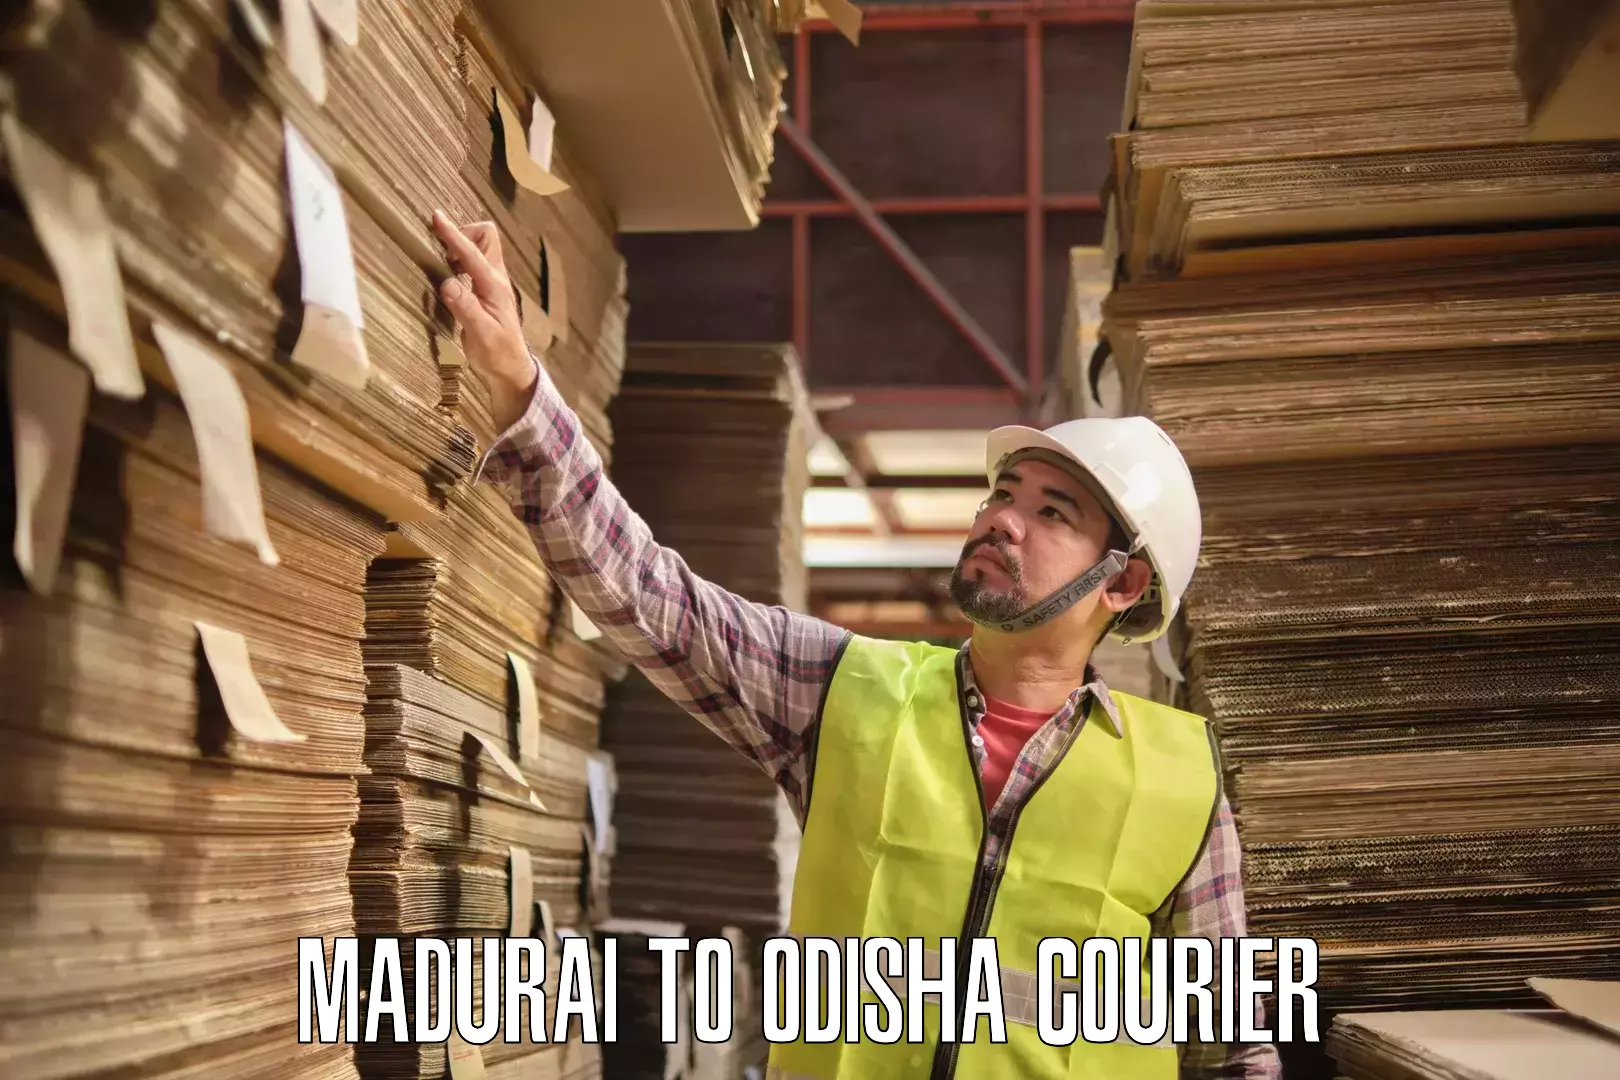 24-hour courier services Madurai to Raighar